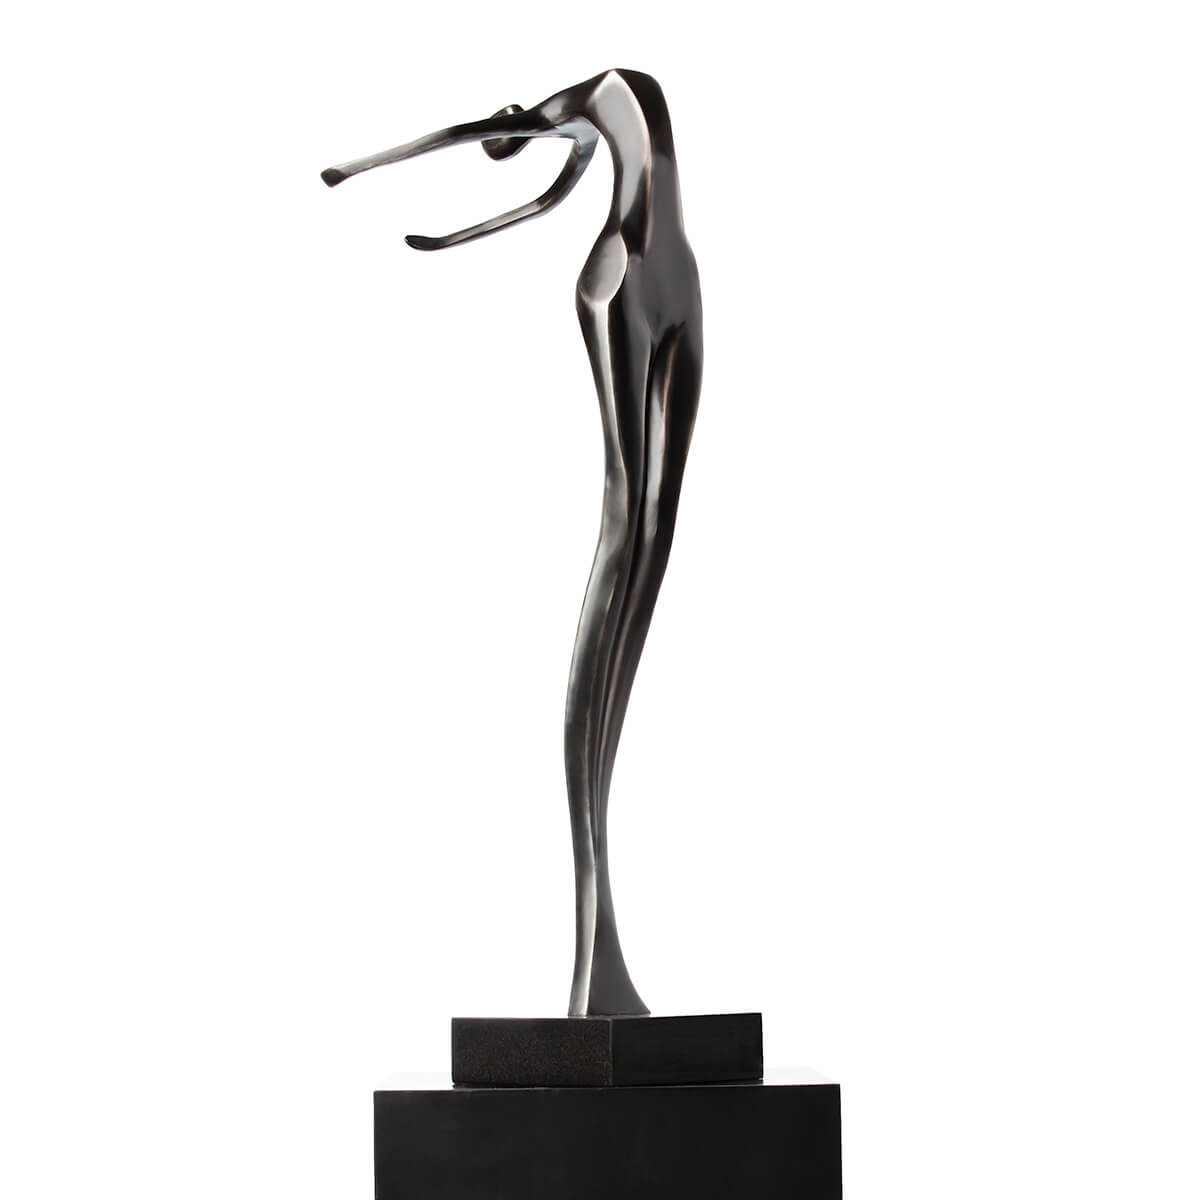 Robert-Helle-Sculpture-Gallery-Surrender-2-1200x1200